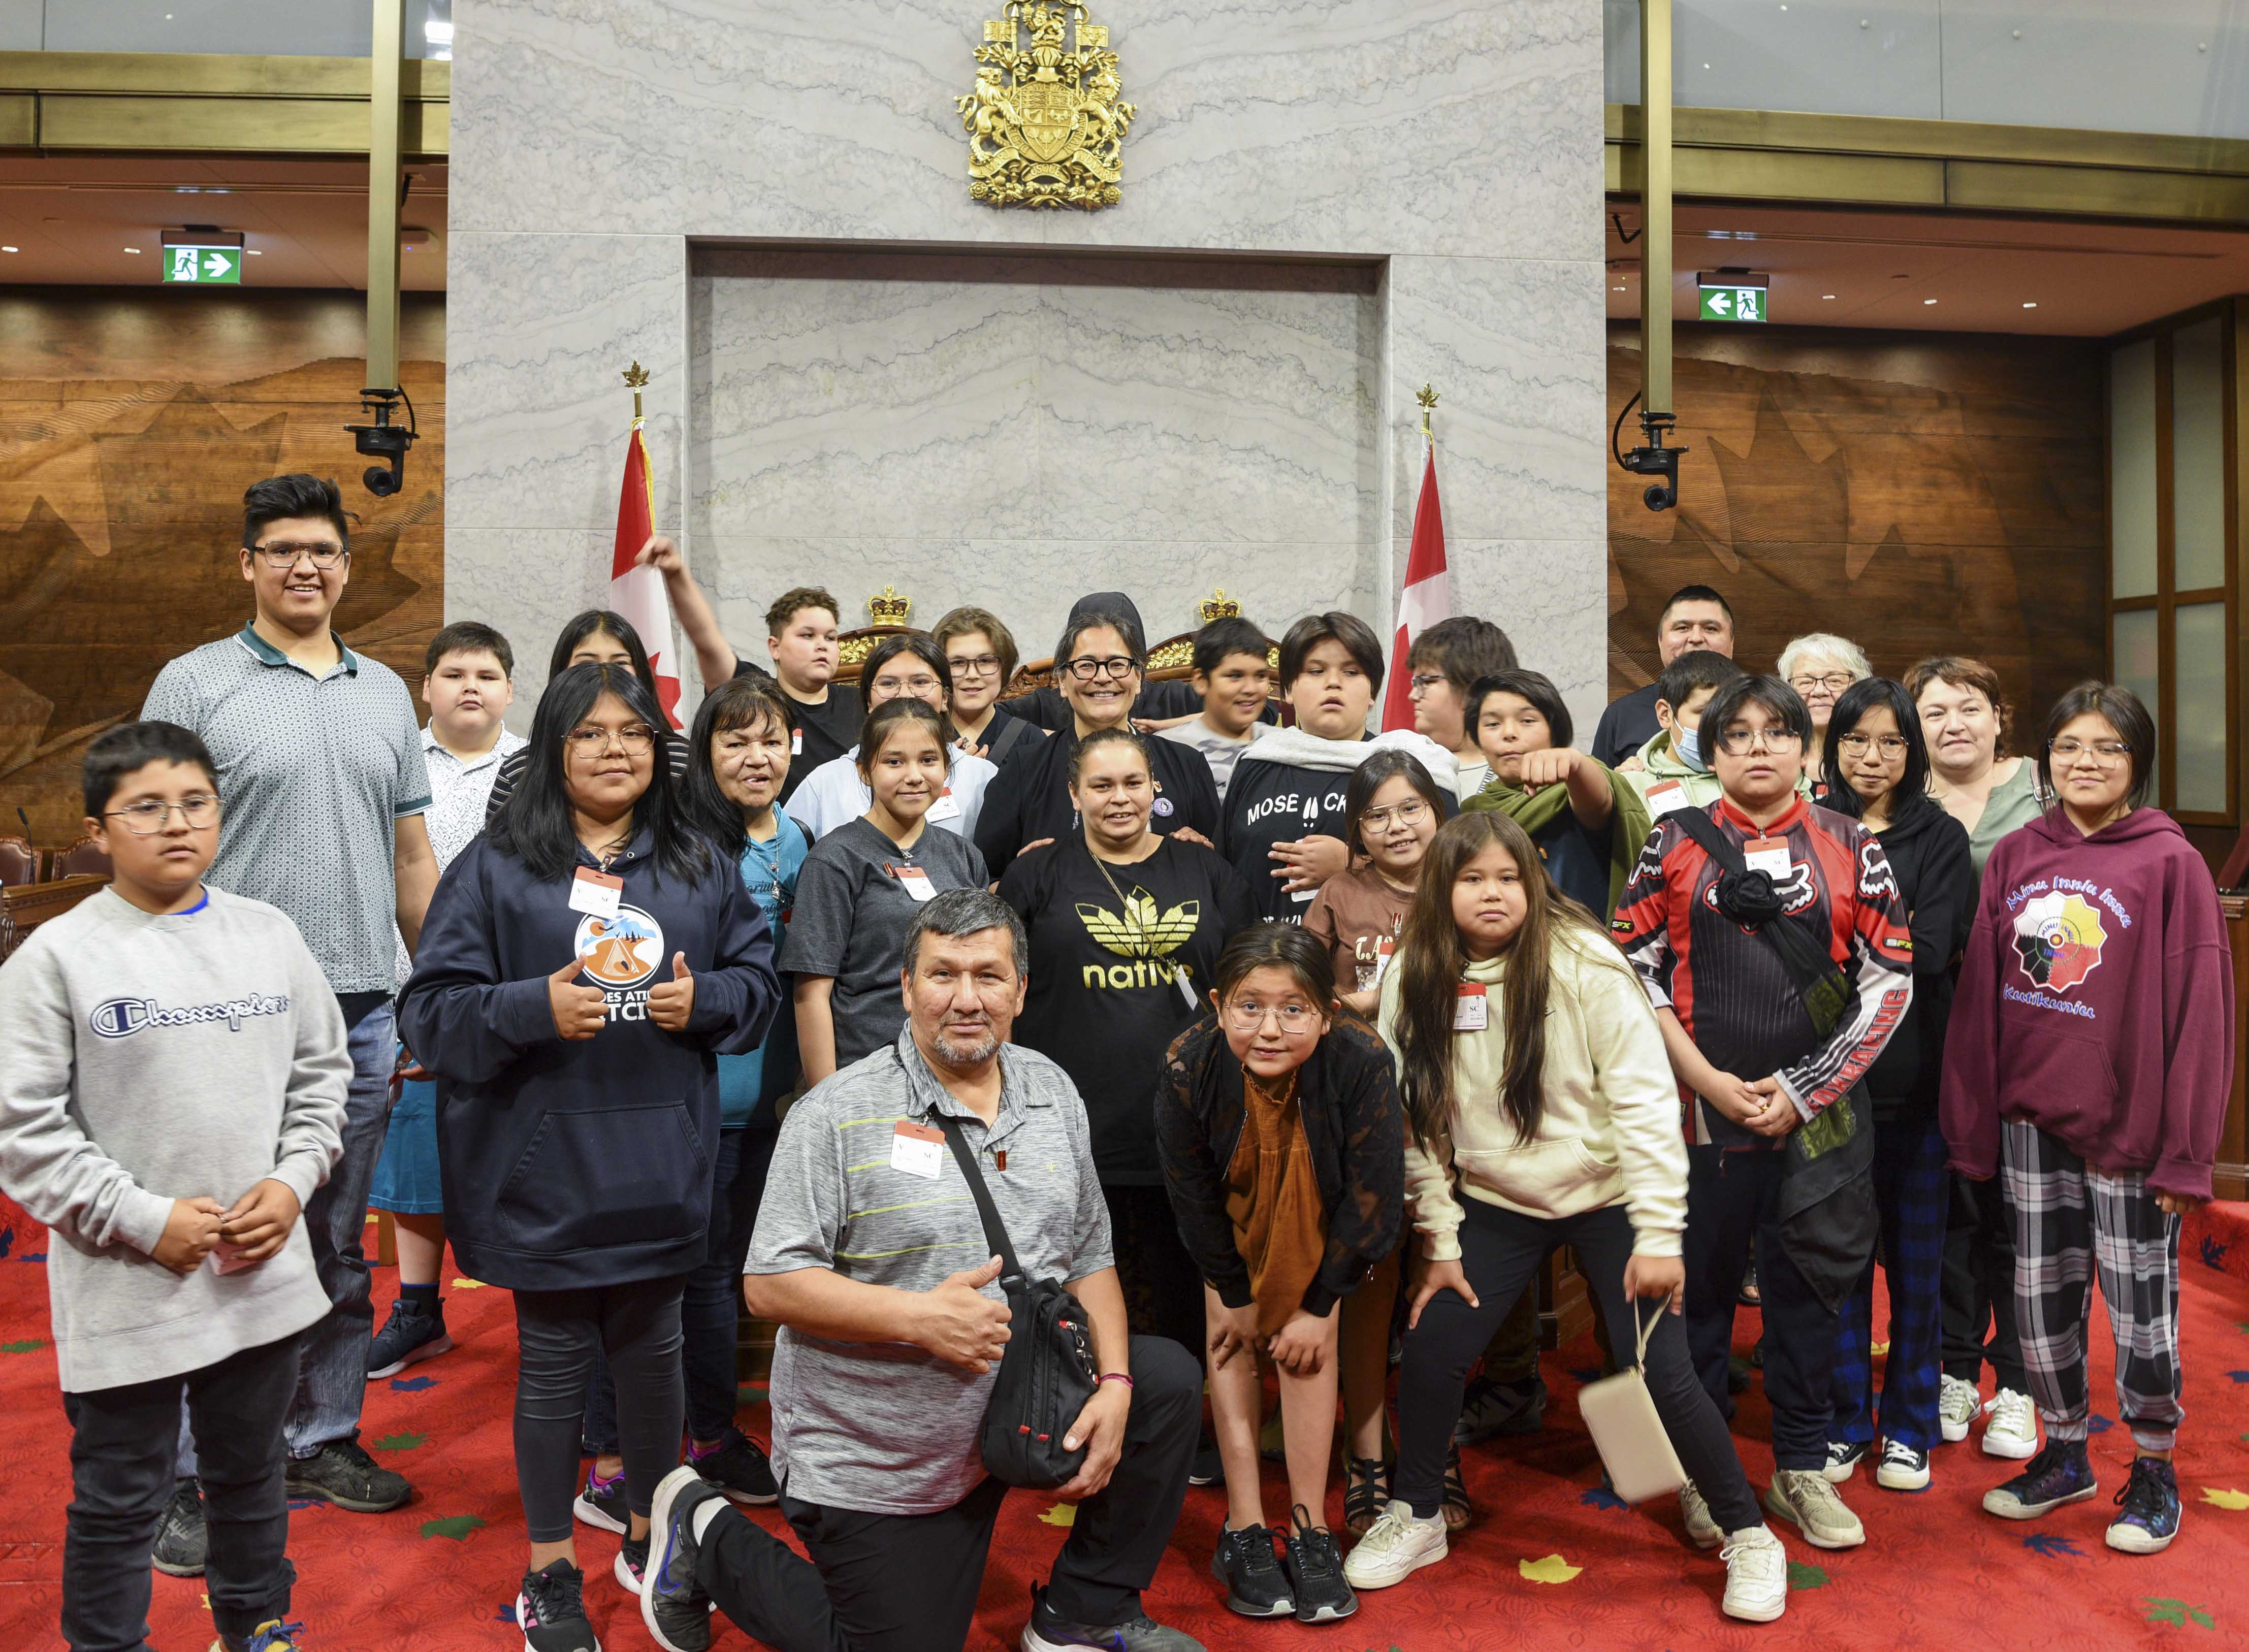 Un groupe d’élèves avec le personnel de l’école et la sénatrice Michèle Audette posent devant les trônes de la Chambre du Sénat.